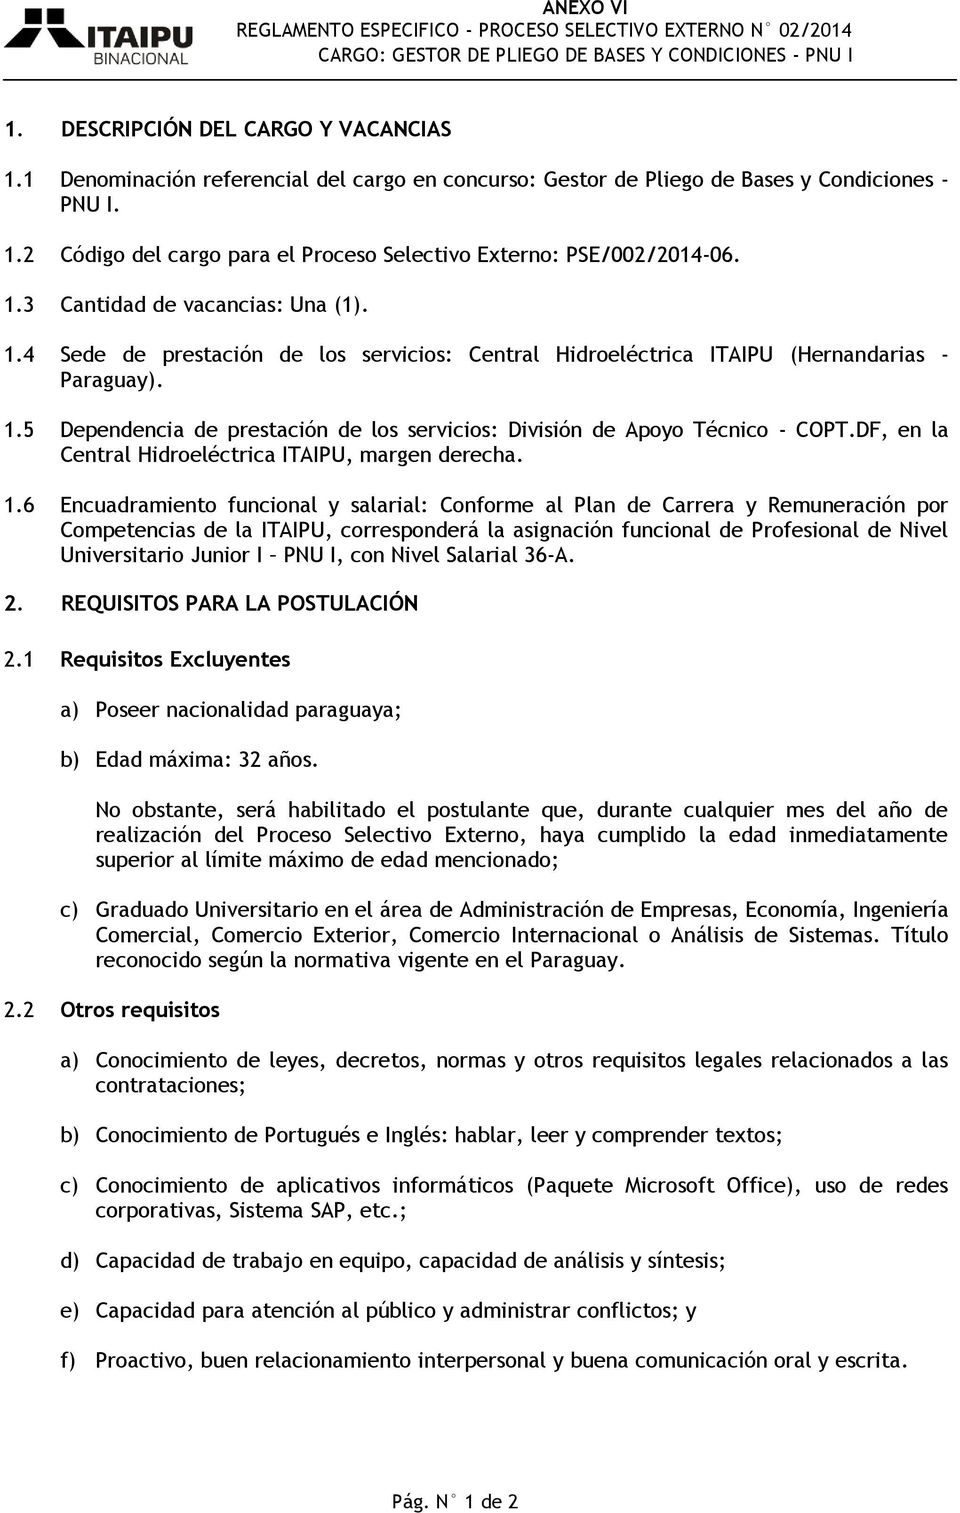 1.4 Sede de prestación de los servicios: Central Hidroeléctrica ITAIPU (Hernandarias - Paraguay). 1.5 Dependencia de prestación de los servicios: División de Apoyo Técnico - COPT.